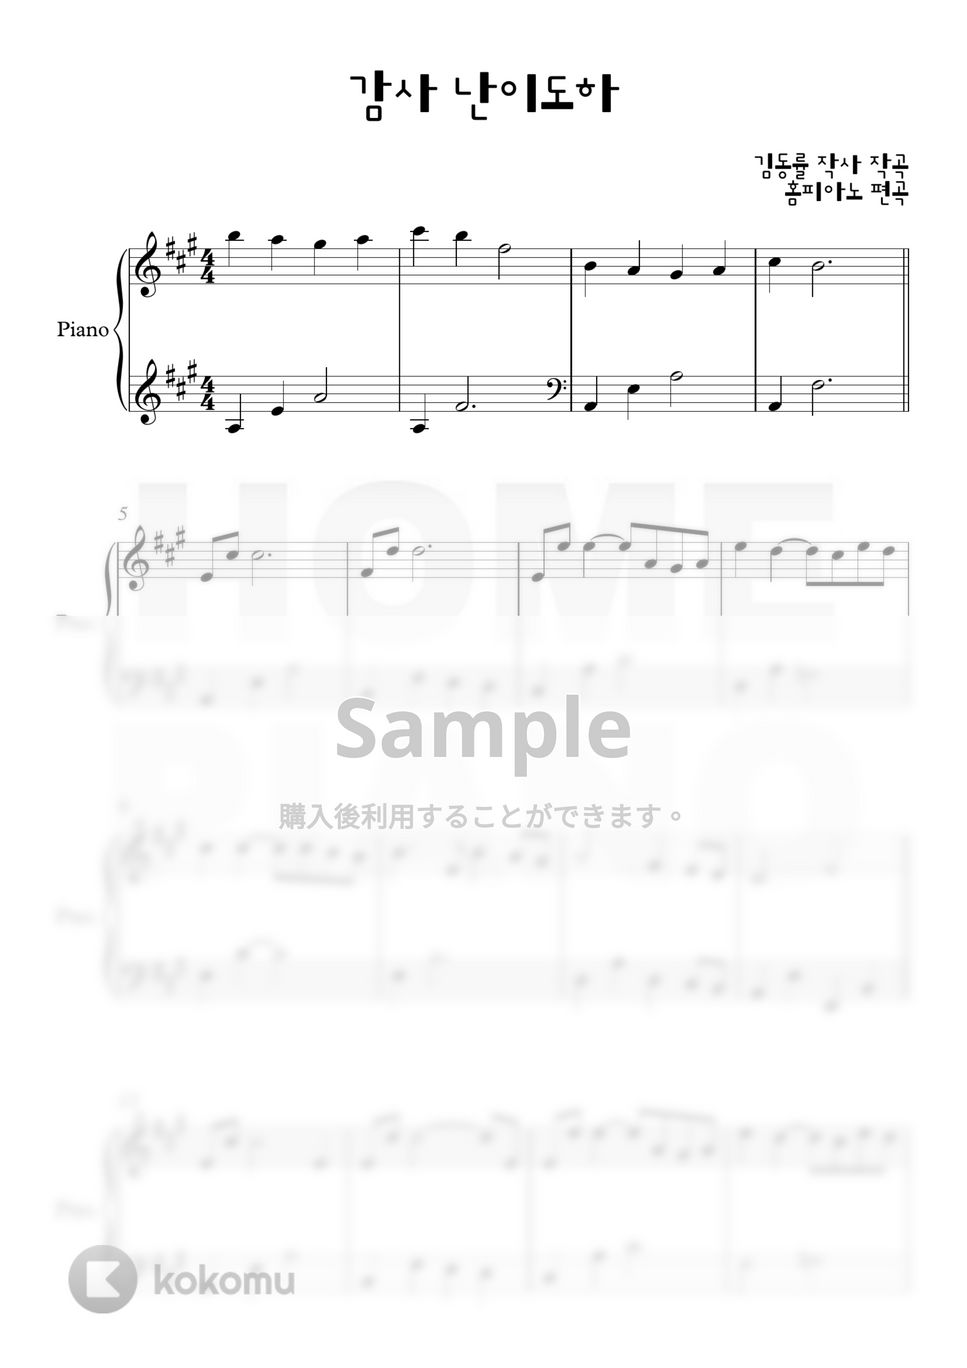 キム・ドンリュル - 感謝 (初級) by HOME PIANO